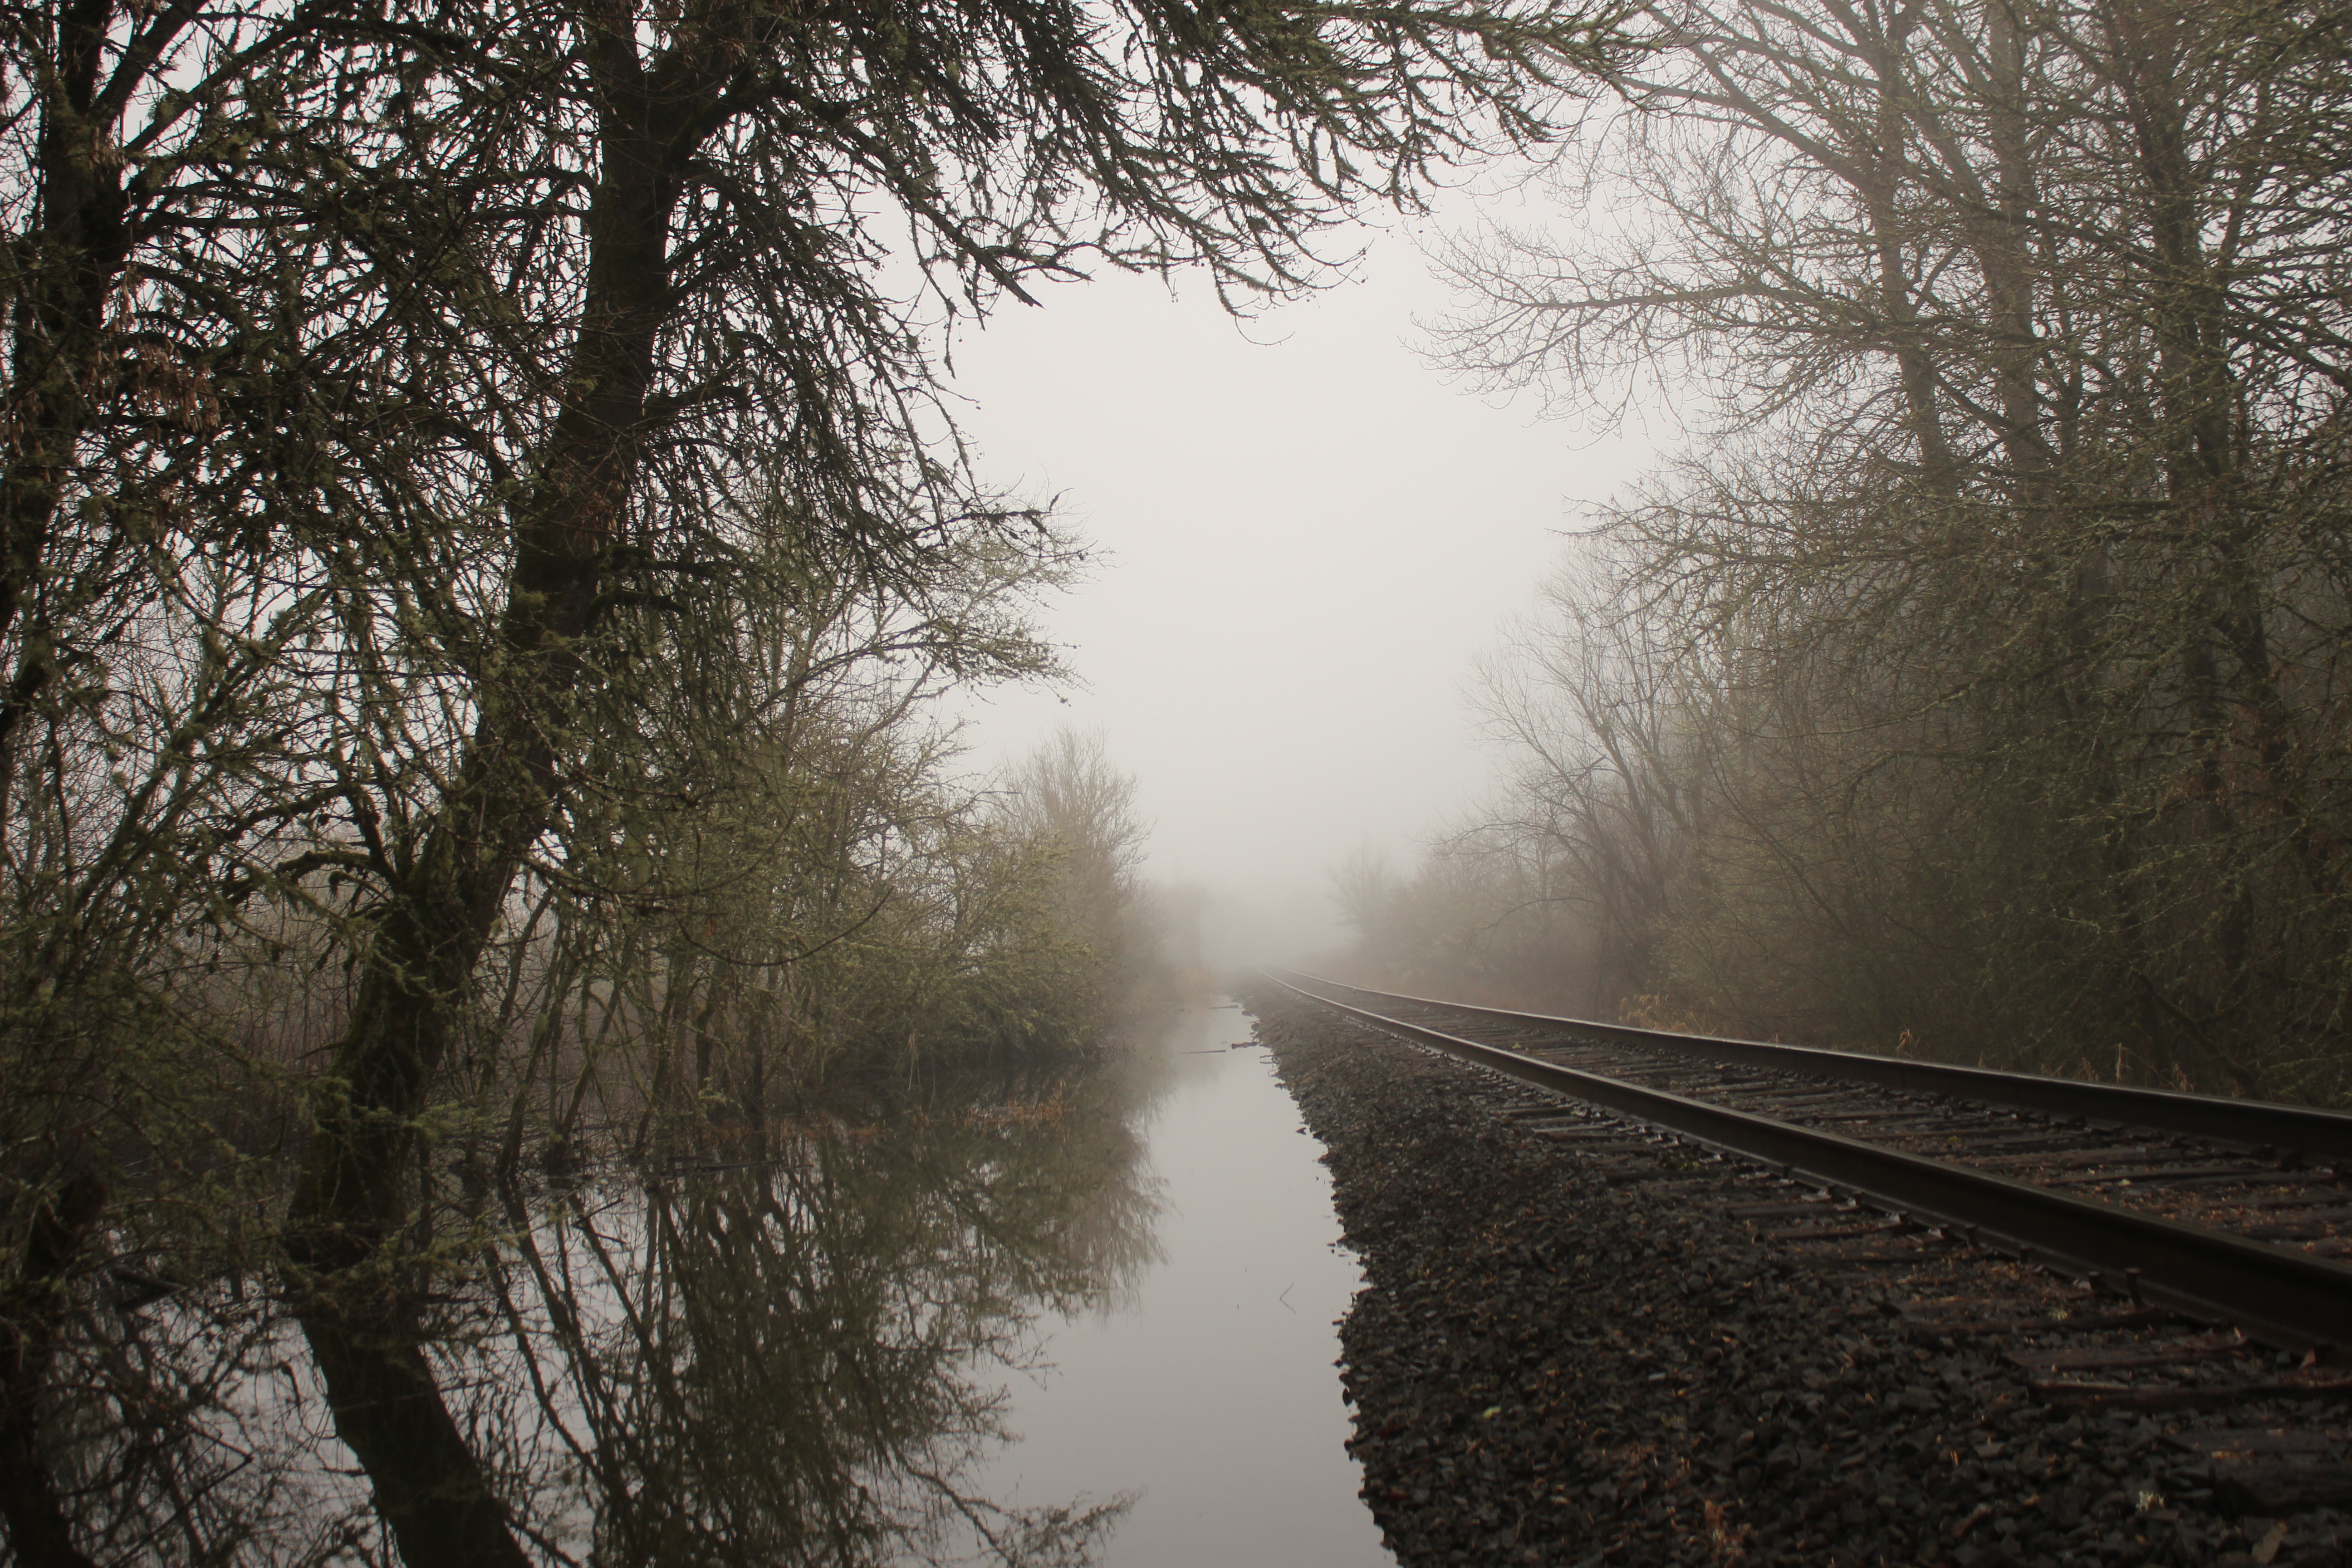 General 5184x3456 railway mist water reflection spooky street